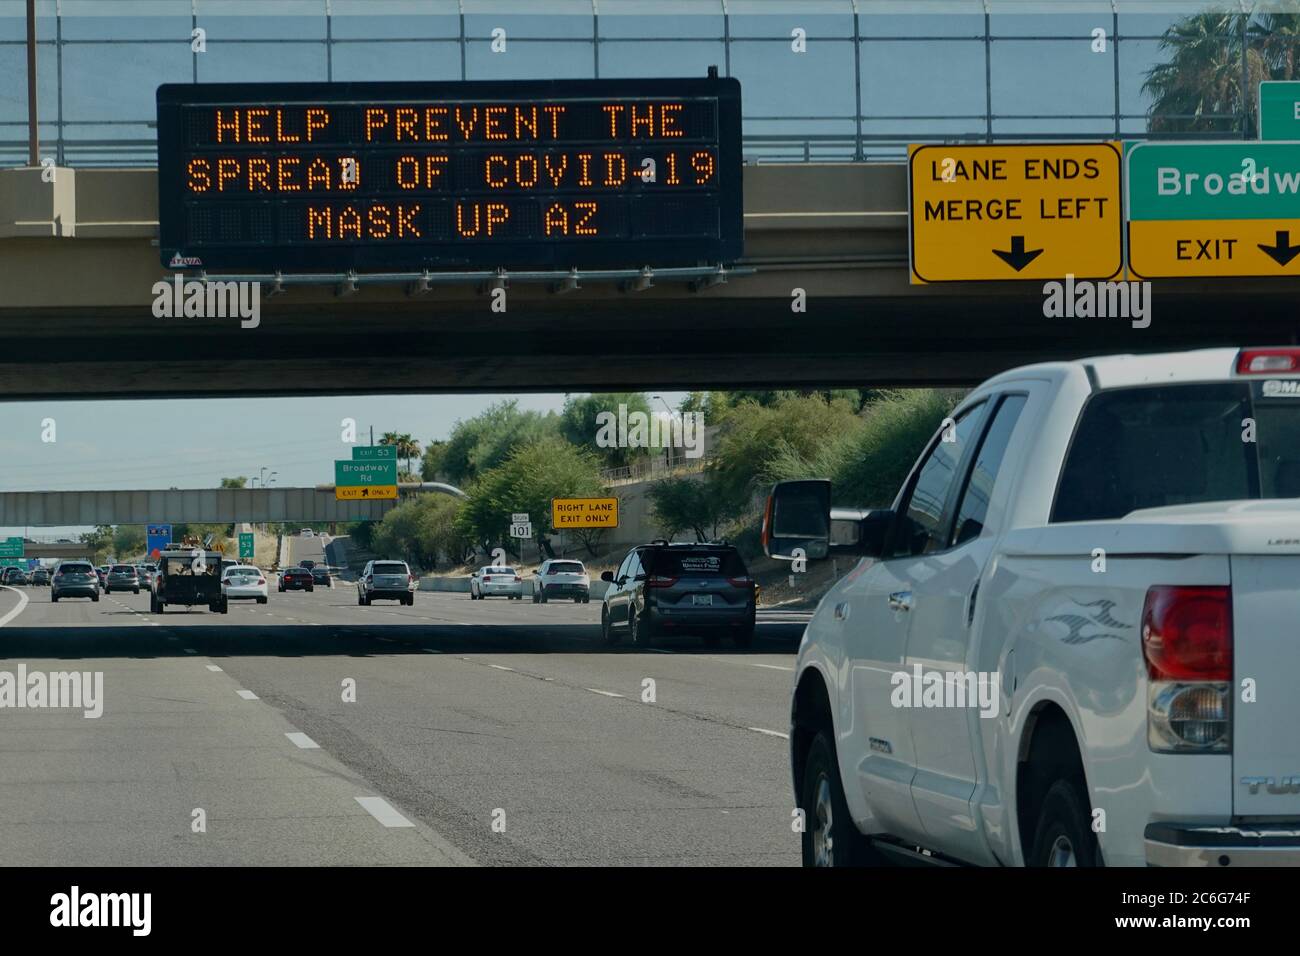 Les panneaux de signalisation sur la route indiquent la sensibilisation et les avertissements à la pandémie COVID-19. Banque D'Images